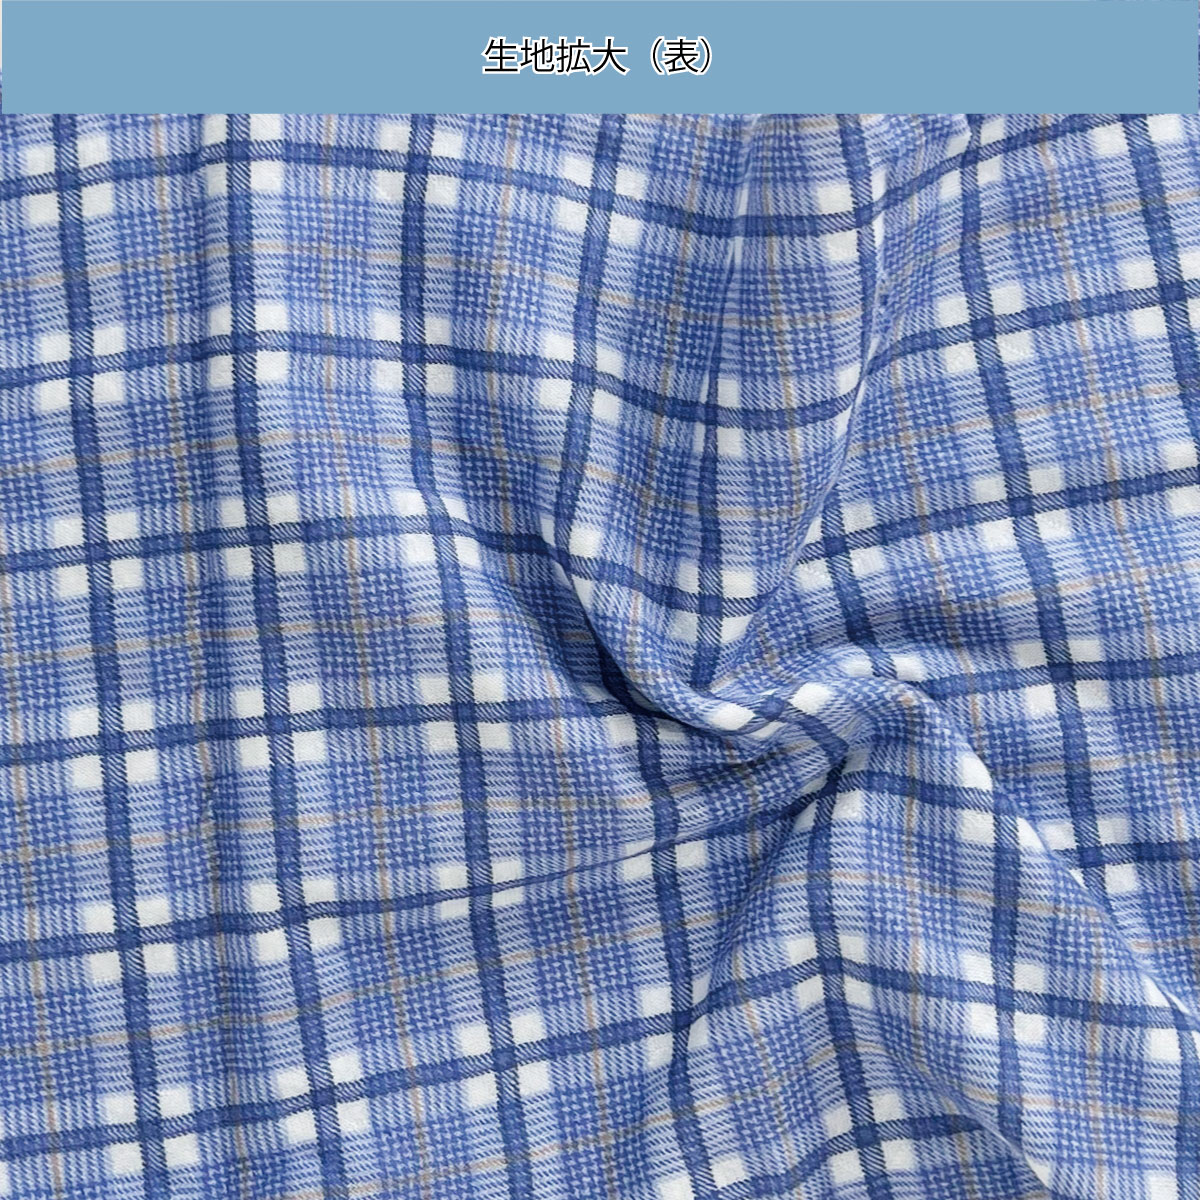 最安値挑戦 牧原本店パジャマ型ねまき 秋冬用 紳士用 No.26 L ブルー系